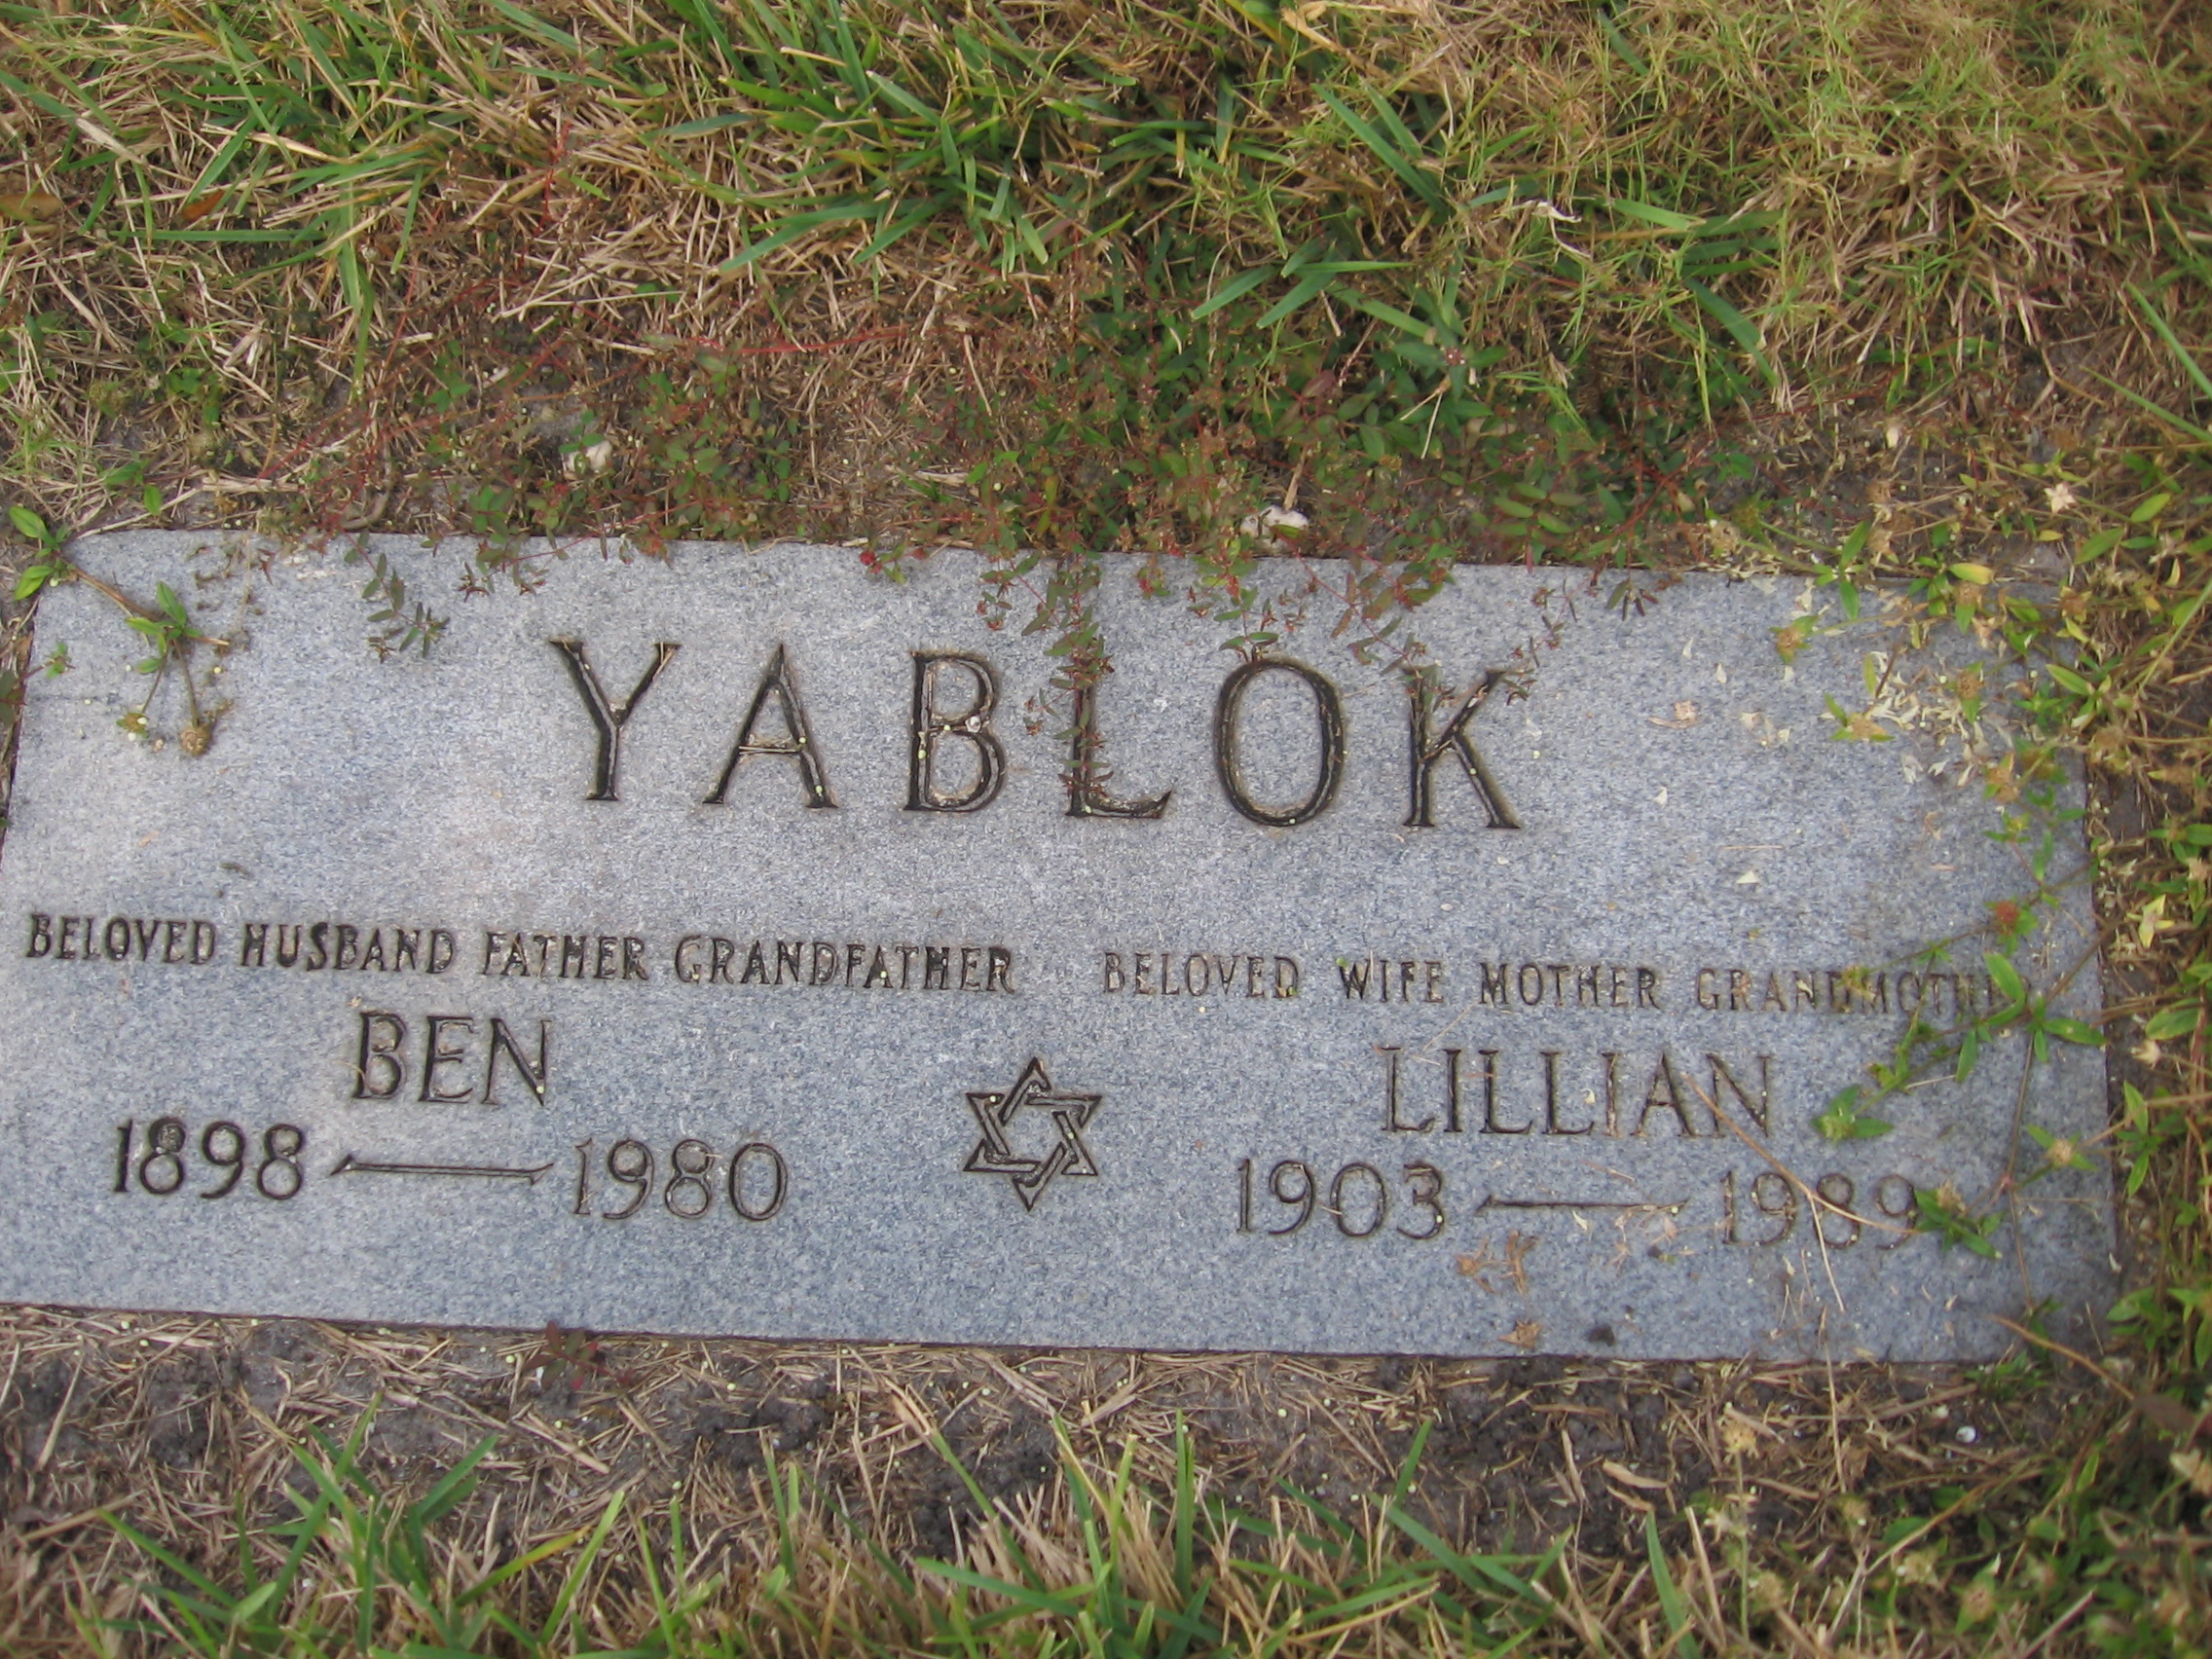 Lillian Yablok